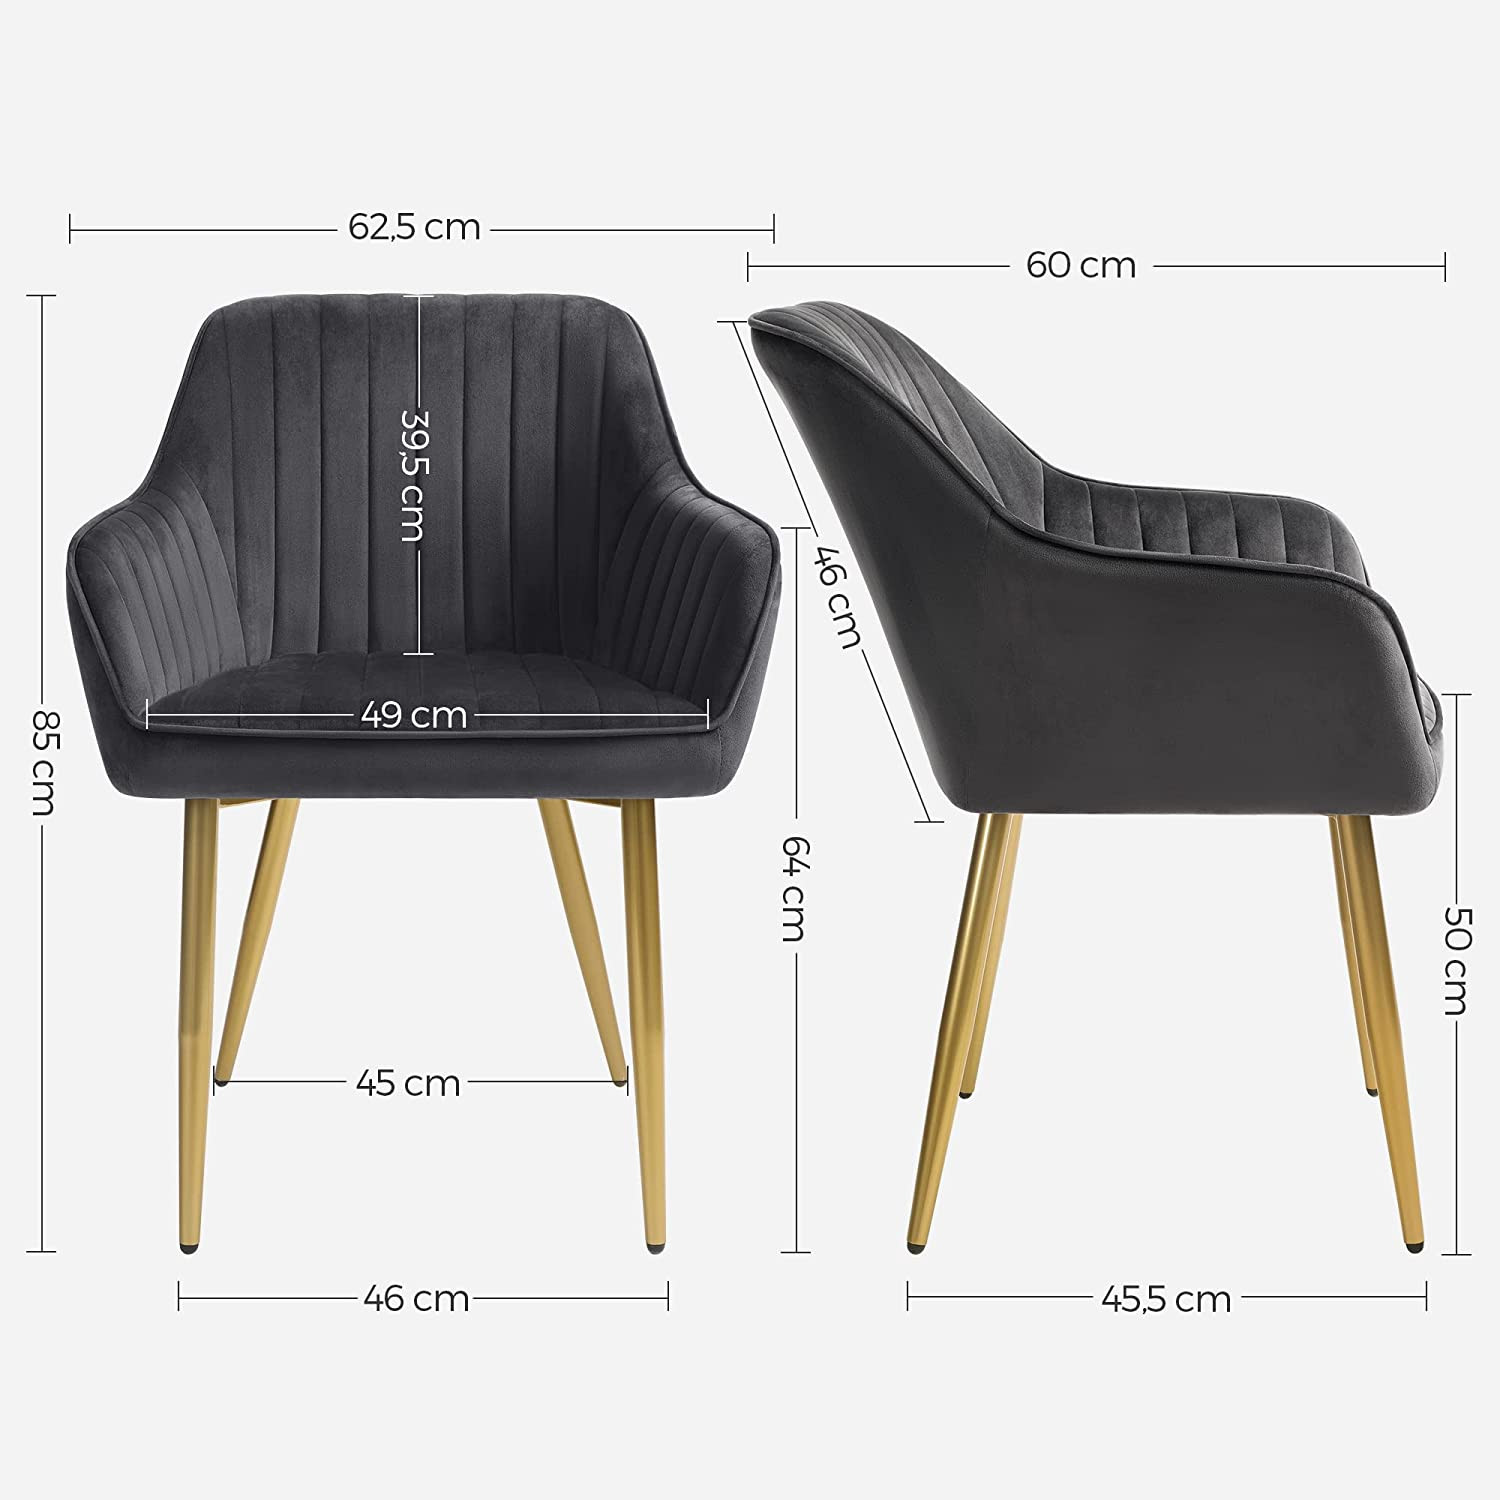 Set šesti jídelních židlí LDC077G01-6 (6 ks)